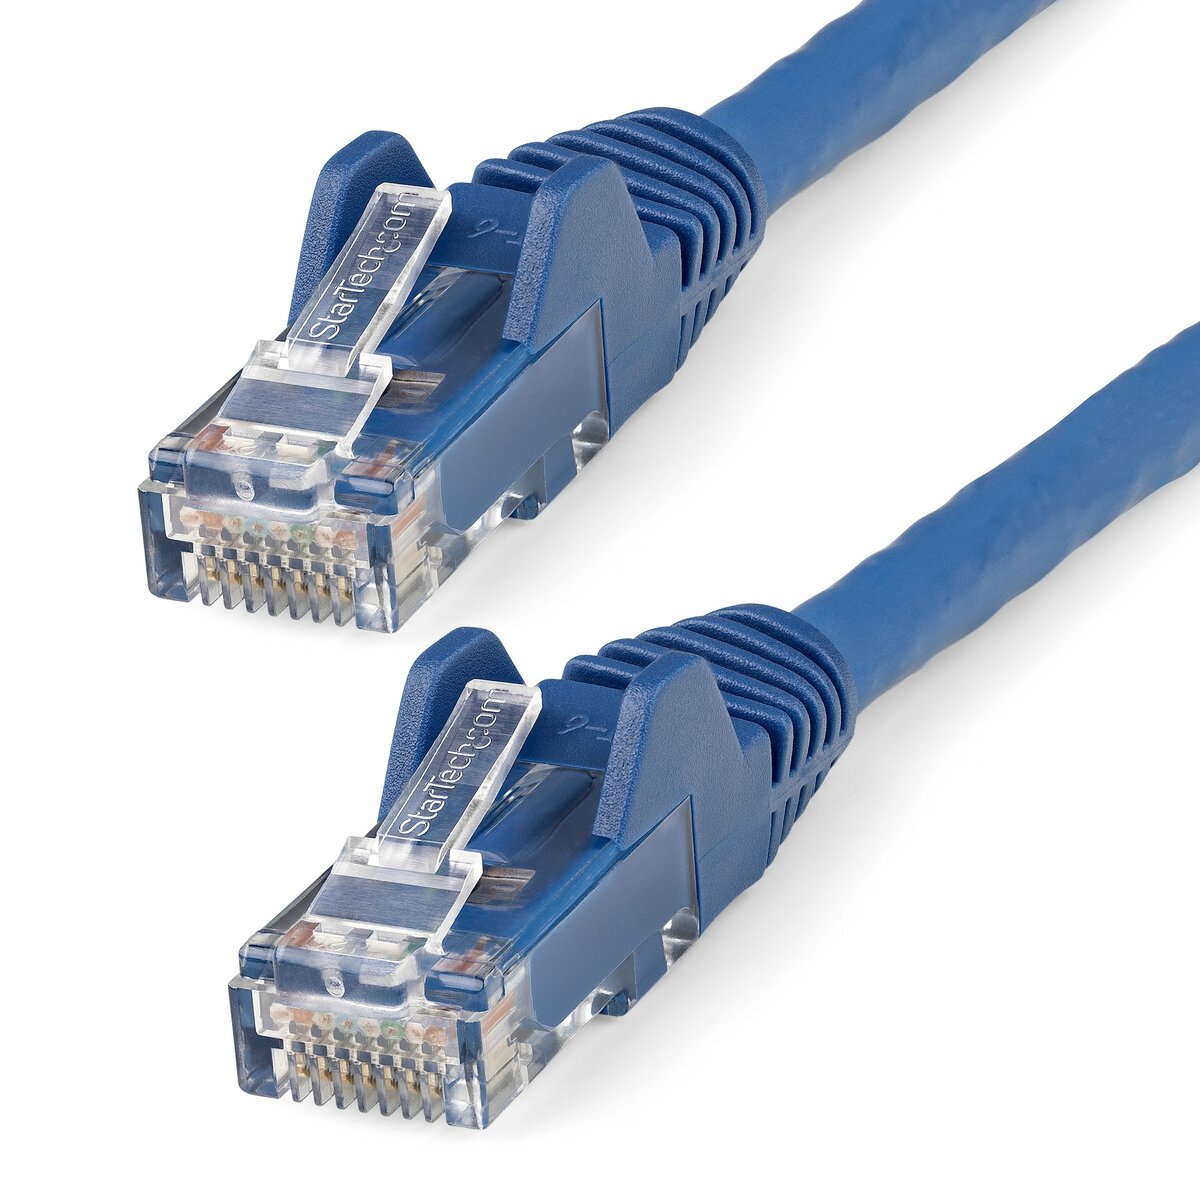 15M Purple Ethernet Cable Cat5e RJ45 Network Lan Patch Lead 100% Copper 49.2ft 